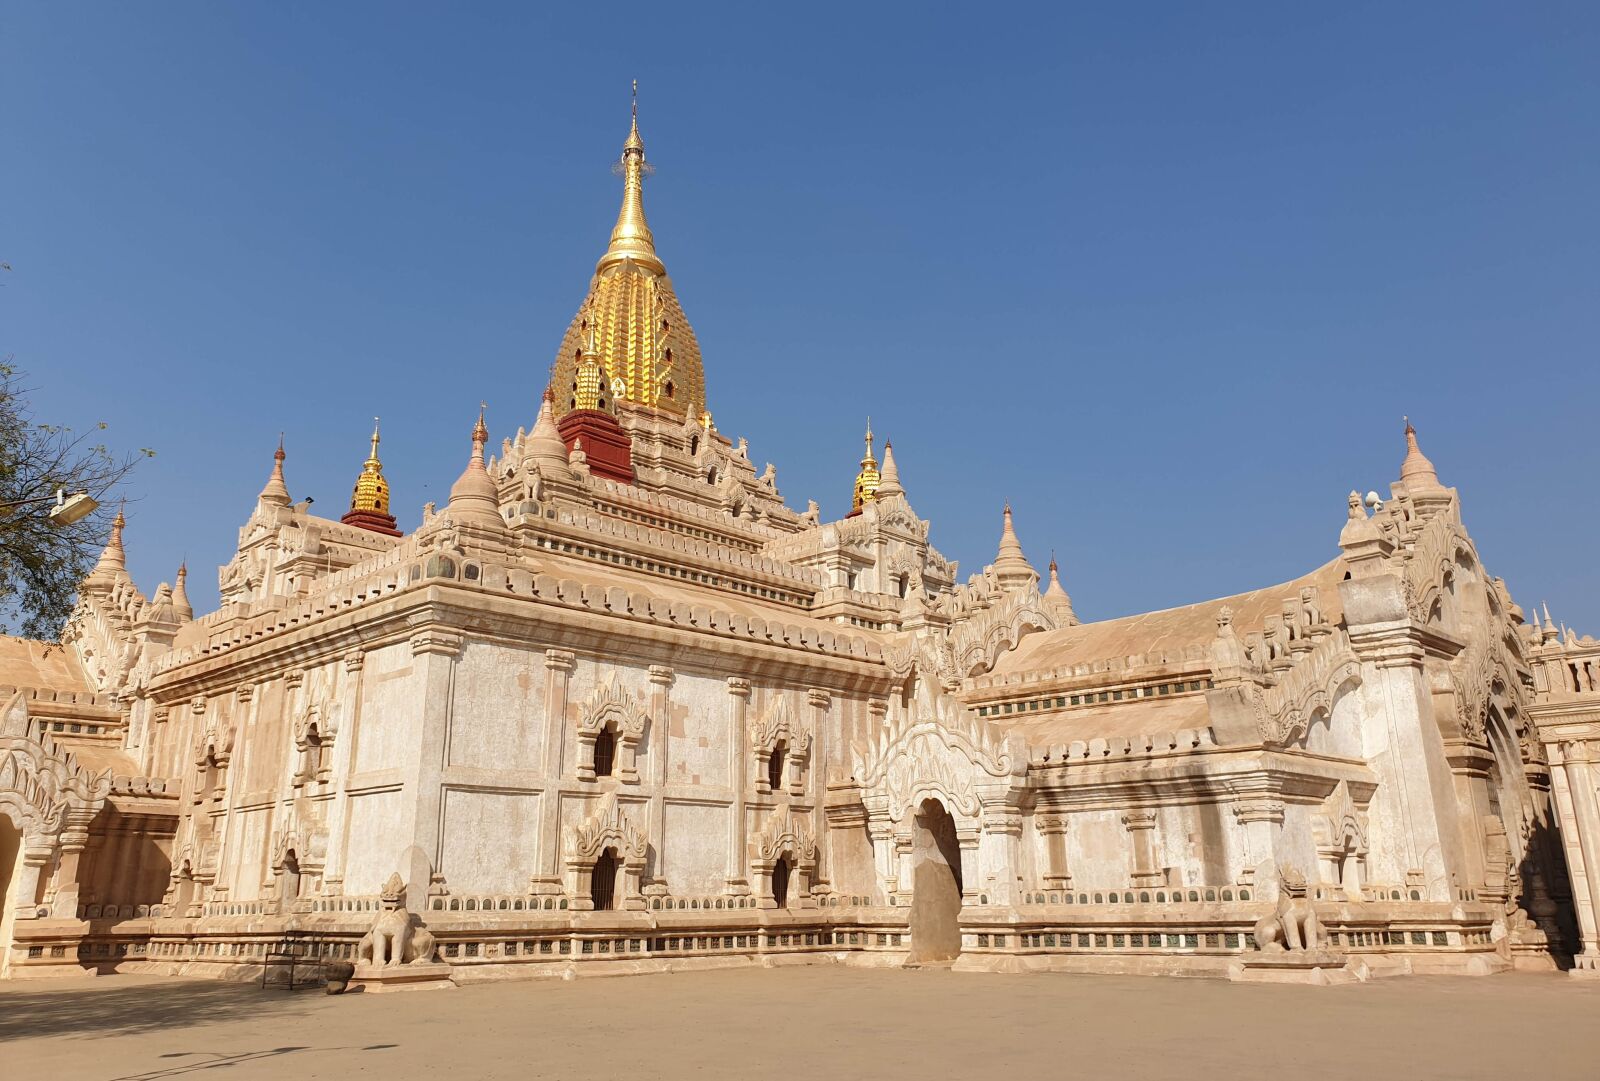 Samsung Galaxy S9+ sample photo. Bagan, ananda, temple photography